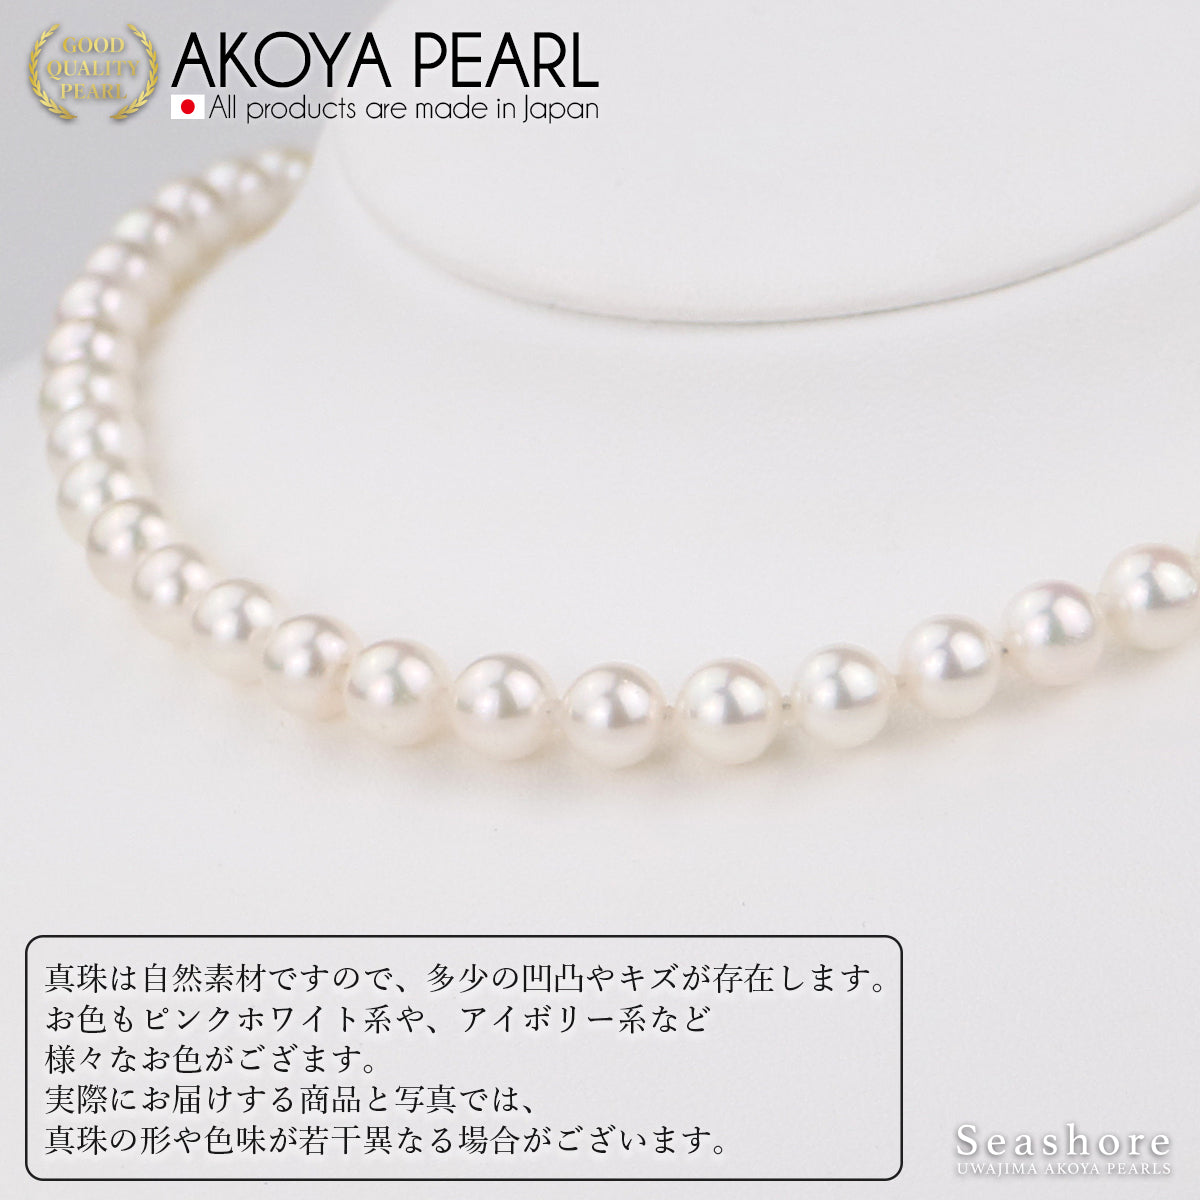 Akoya 珍珠正装项链 2 件套 [7.0-7.5 毫米]（含耳环）首发尺寸正装套装，带真品证书和储物盒